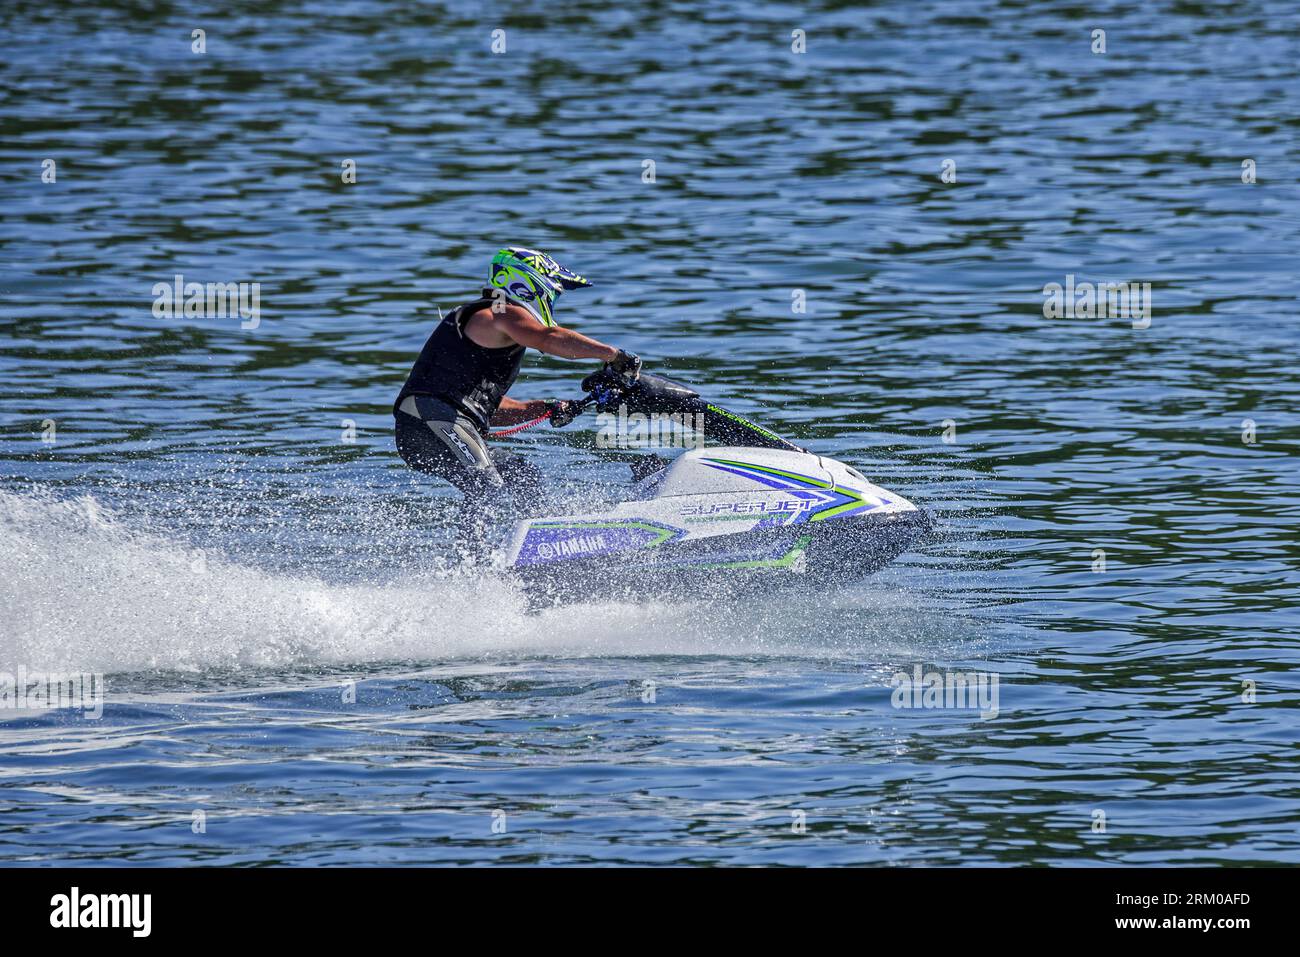 Jet-Ski / Jetski / Wasserroller / Stand-up persönliches Wasserfahrzeug / PWC-Fahrerrennen auf dem See Stockfoto